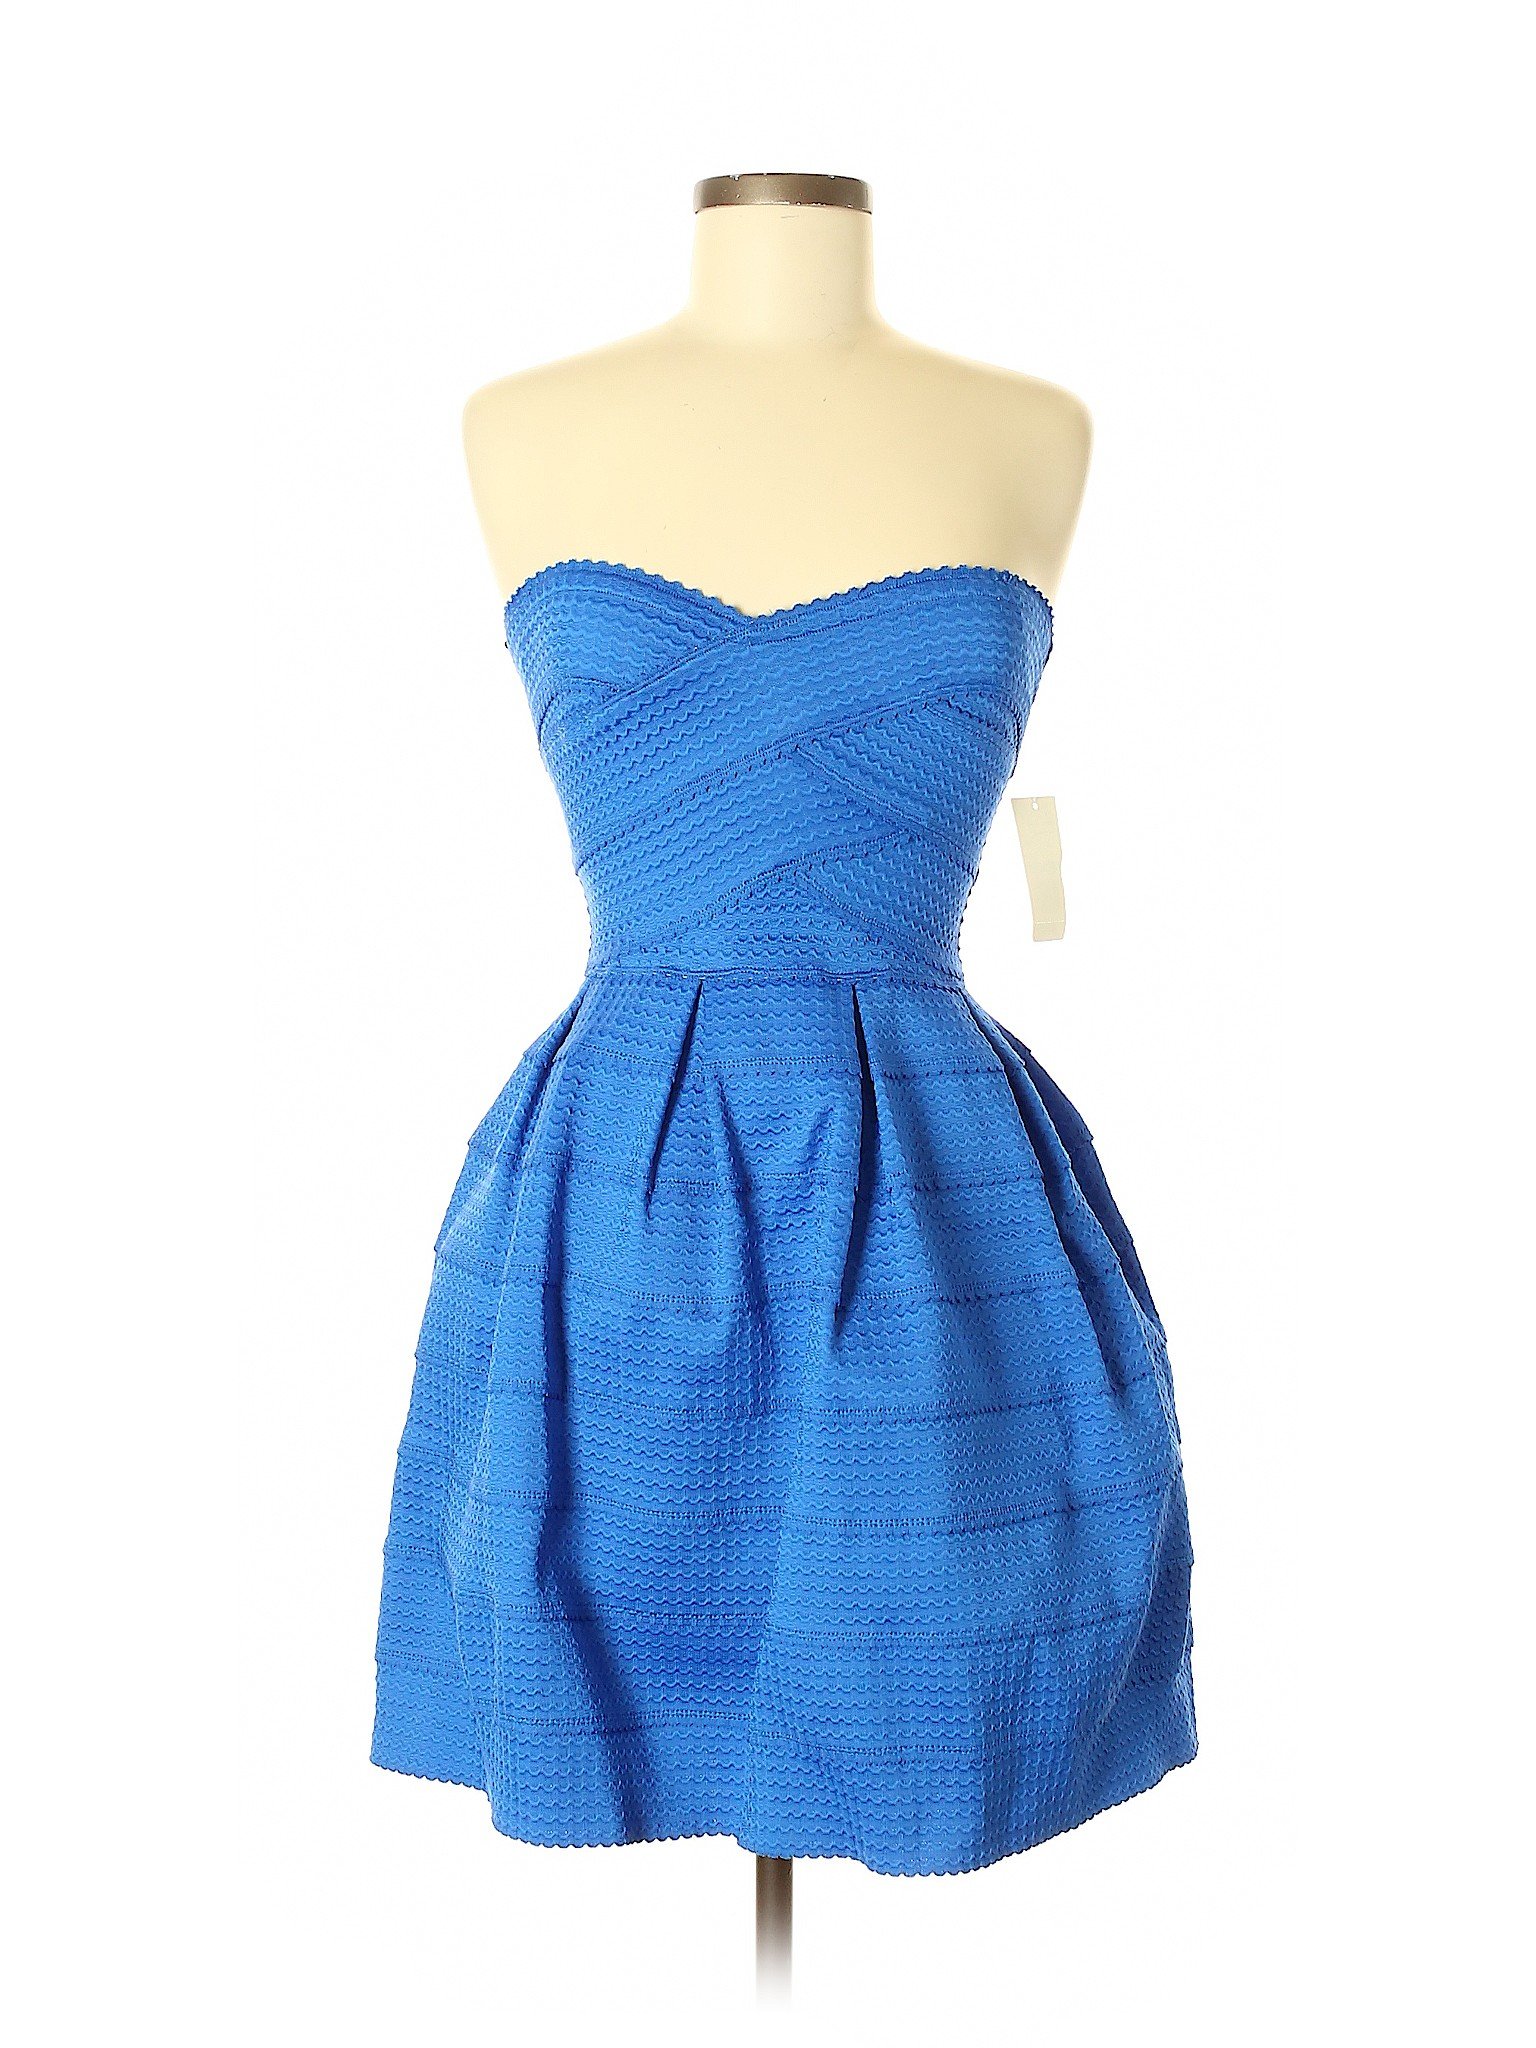 B. Smart Solid Blue Cocktail Dress Size 6 - 43% off | thredUP